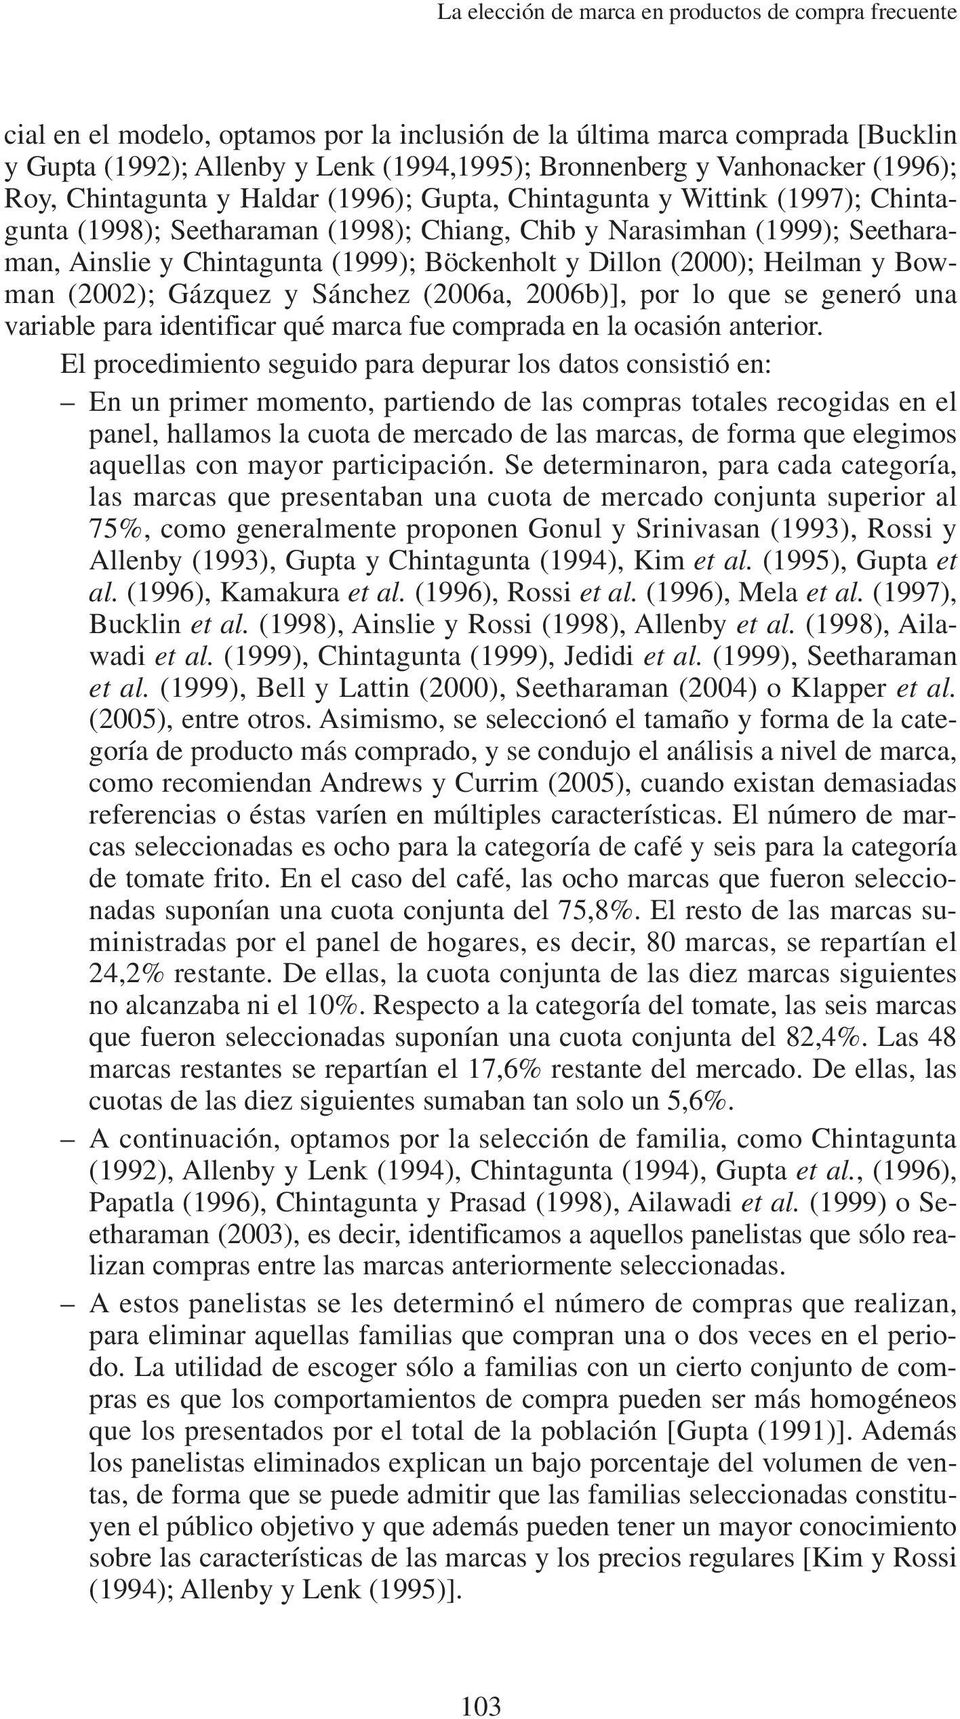 (1999); Böckenholt y Dillon (2000); Heilman y Bowman (2002); Gázquez y Sánchez (2006a, 2006b)], por lo que se generó una variable para identificar qué marca fue comprada en la ocasión anterior.